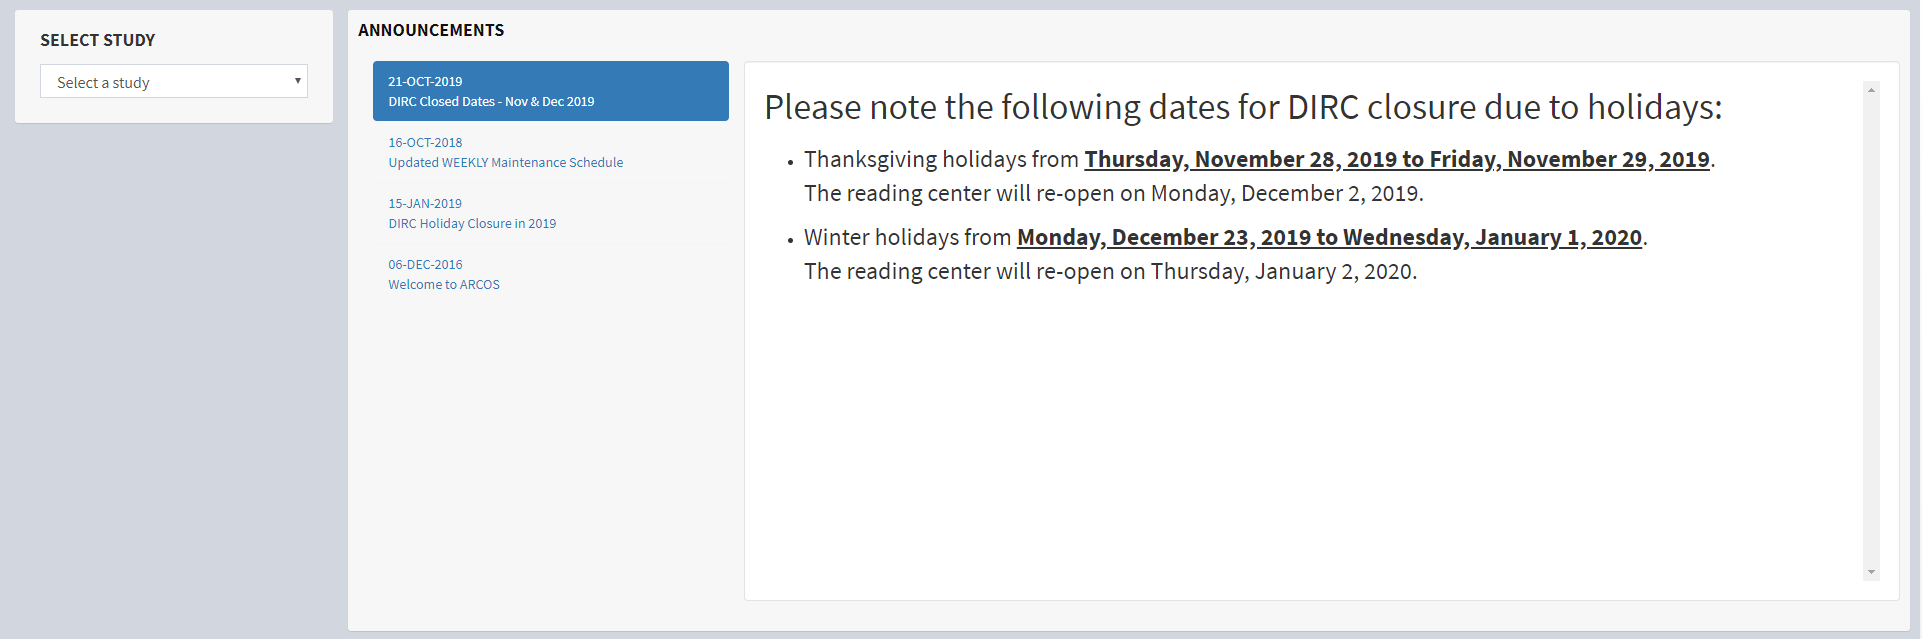 DIRC-closure-due-to-holidays